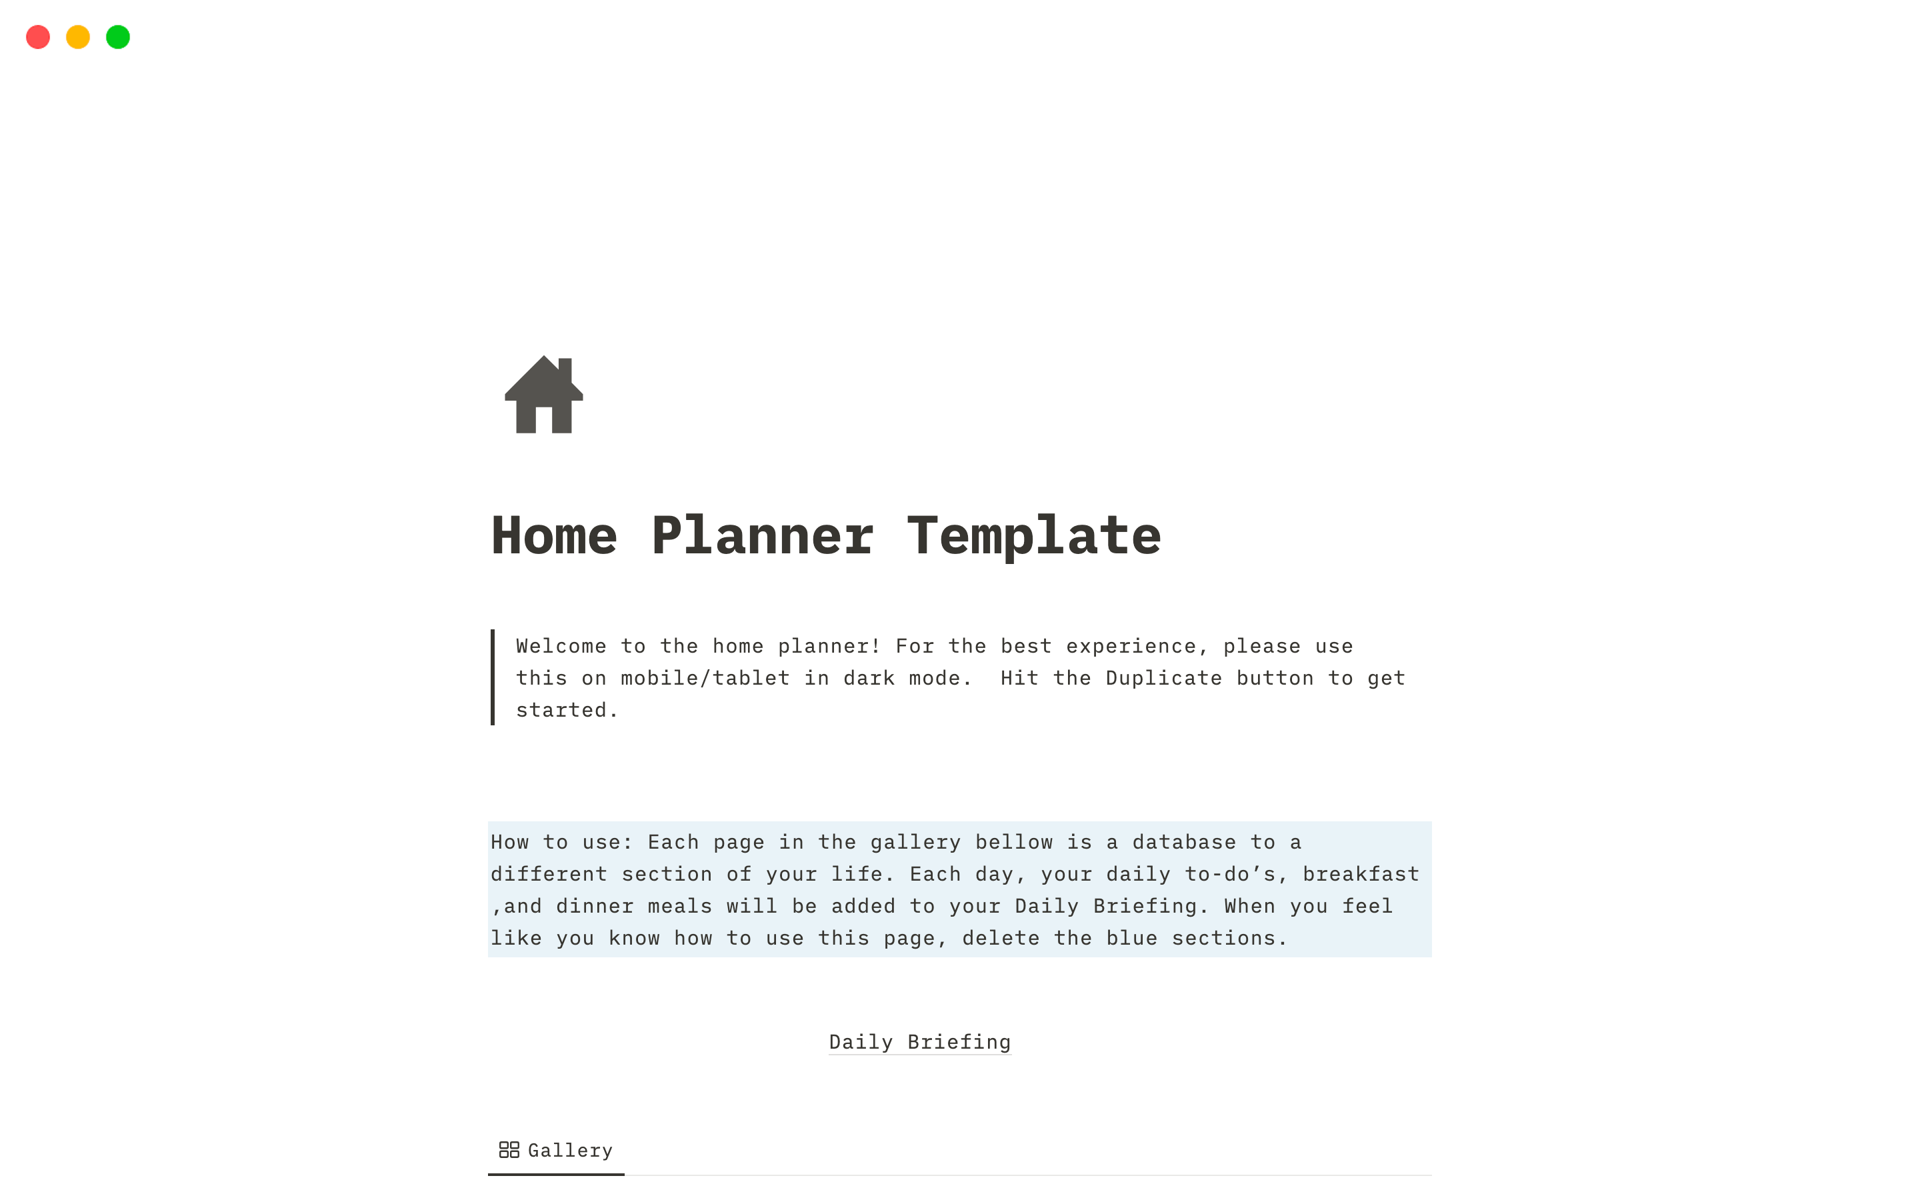 Uma prévia do modelo para Home Planner Template